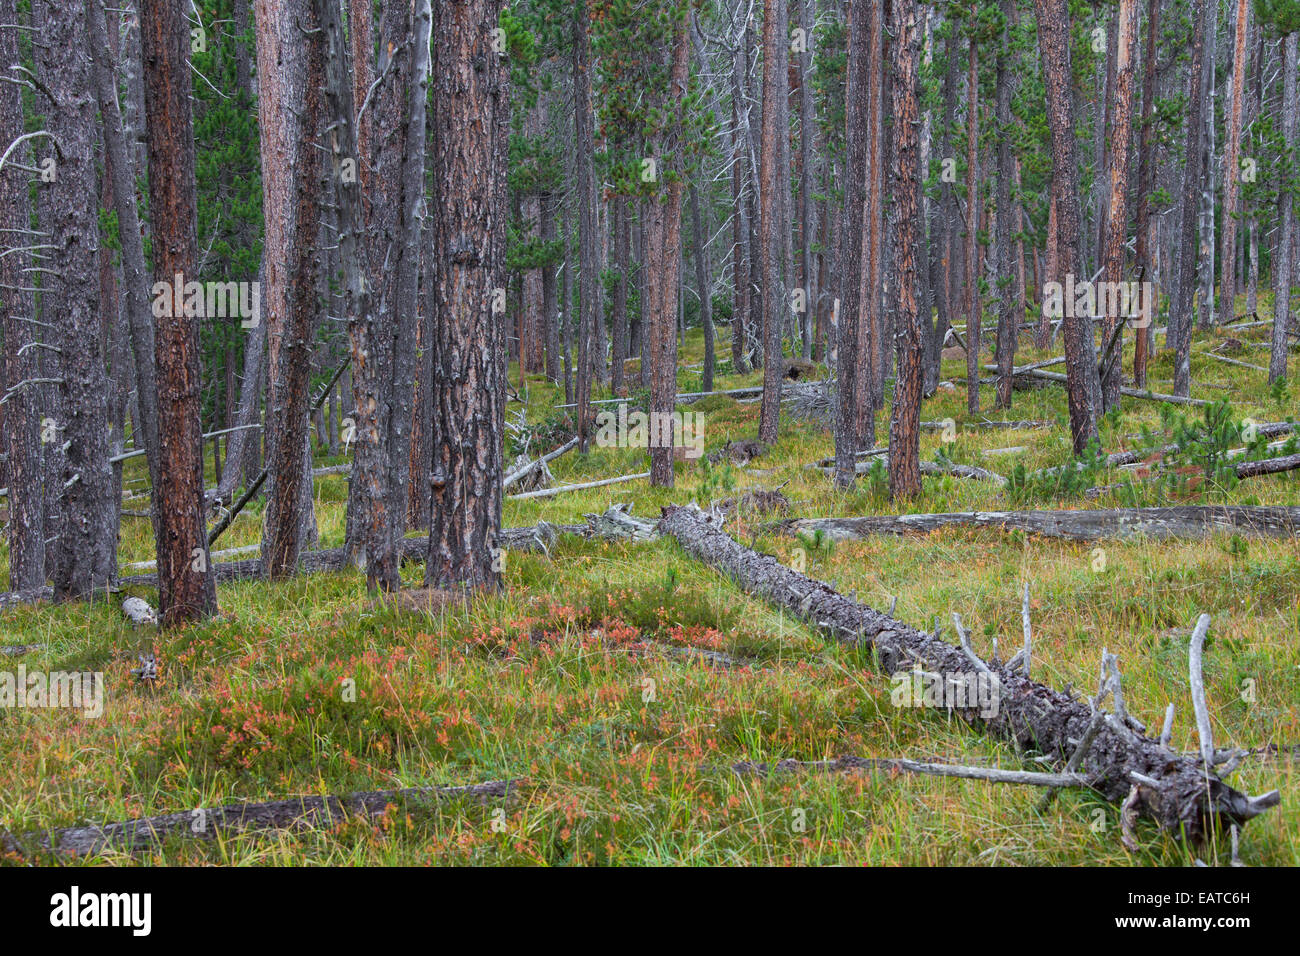 Di Pino silvestre (Pinus silvestris) alberi nel bosco di conifere con tronchi di alberi caduti Foto Stock